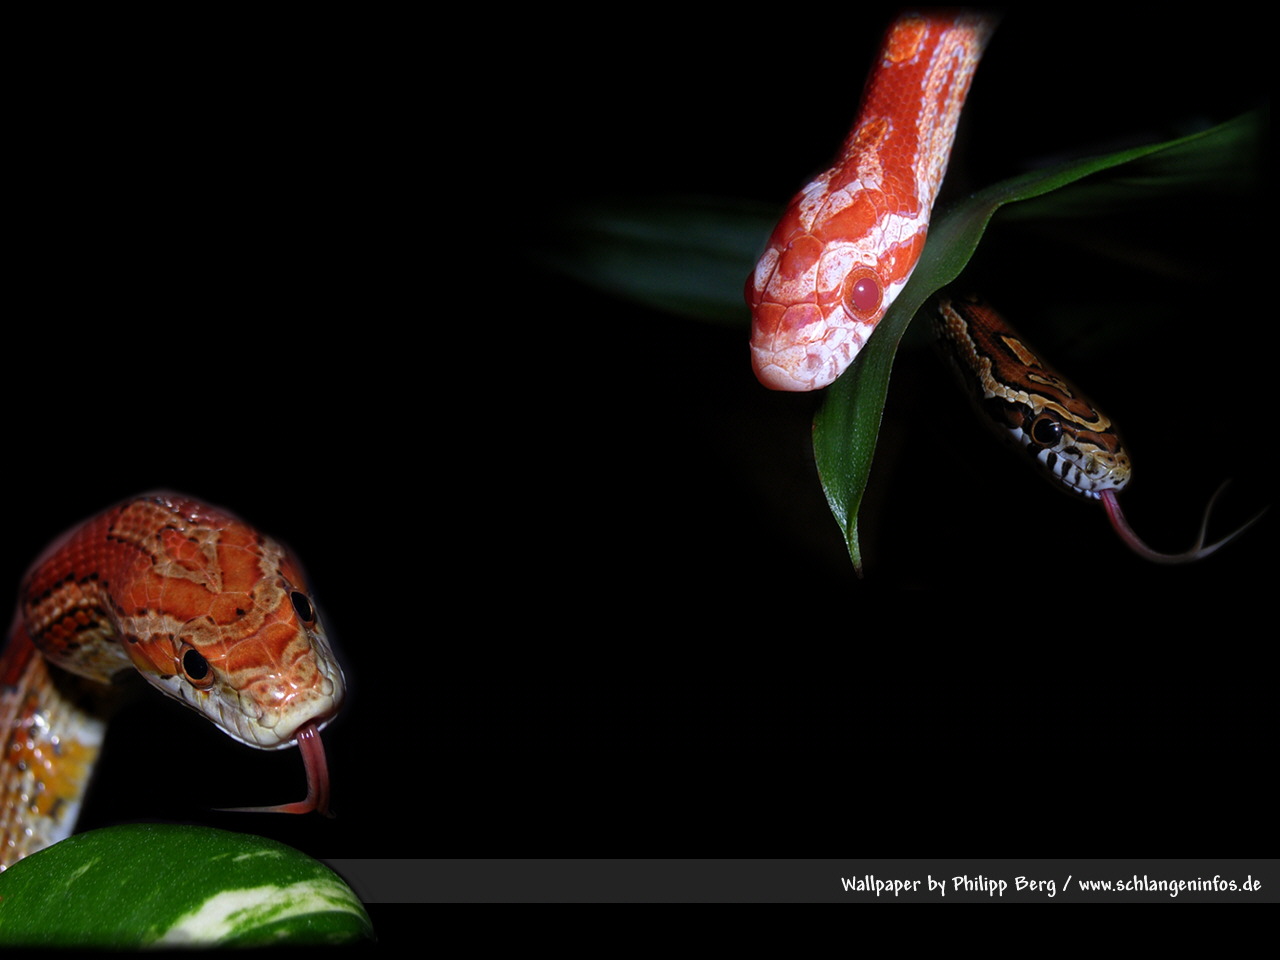 Bildschirmhintergrund Mit Schlangen, Reptilien, Amphibien - Serpent , HD Wallpaper & Backgrounds